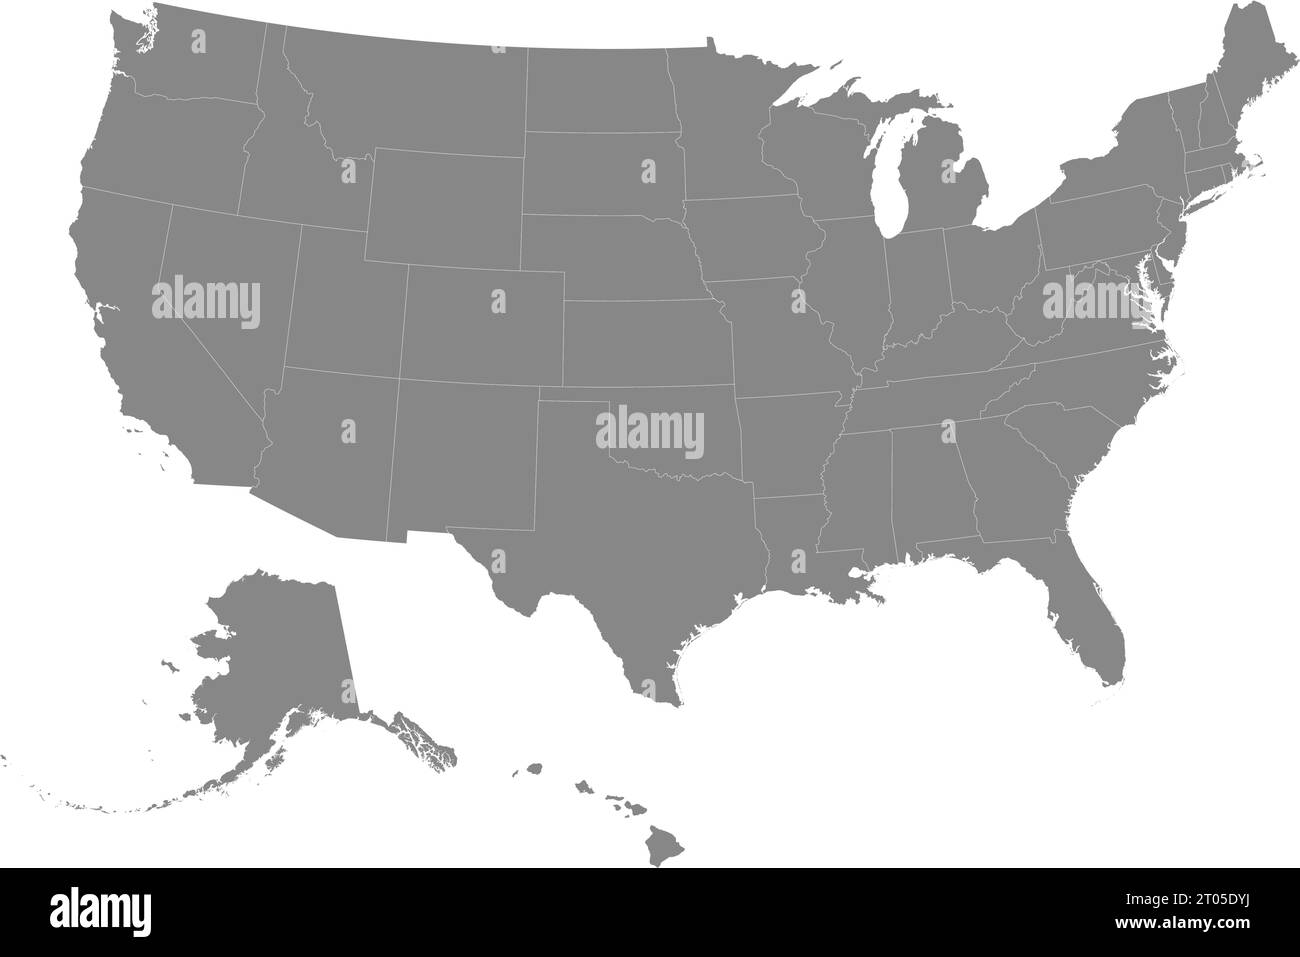 Detaillierte graue CMYK-Bundeskarte der Vereinigten Staaten von Amerika auf transparentem Hintergrund und bundesländergrenzen Stock Vektor